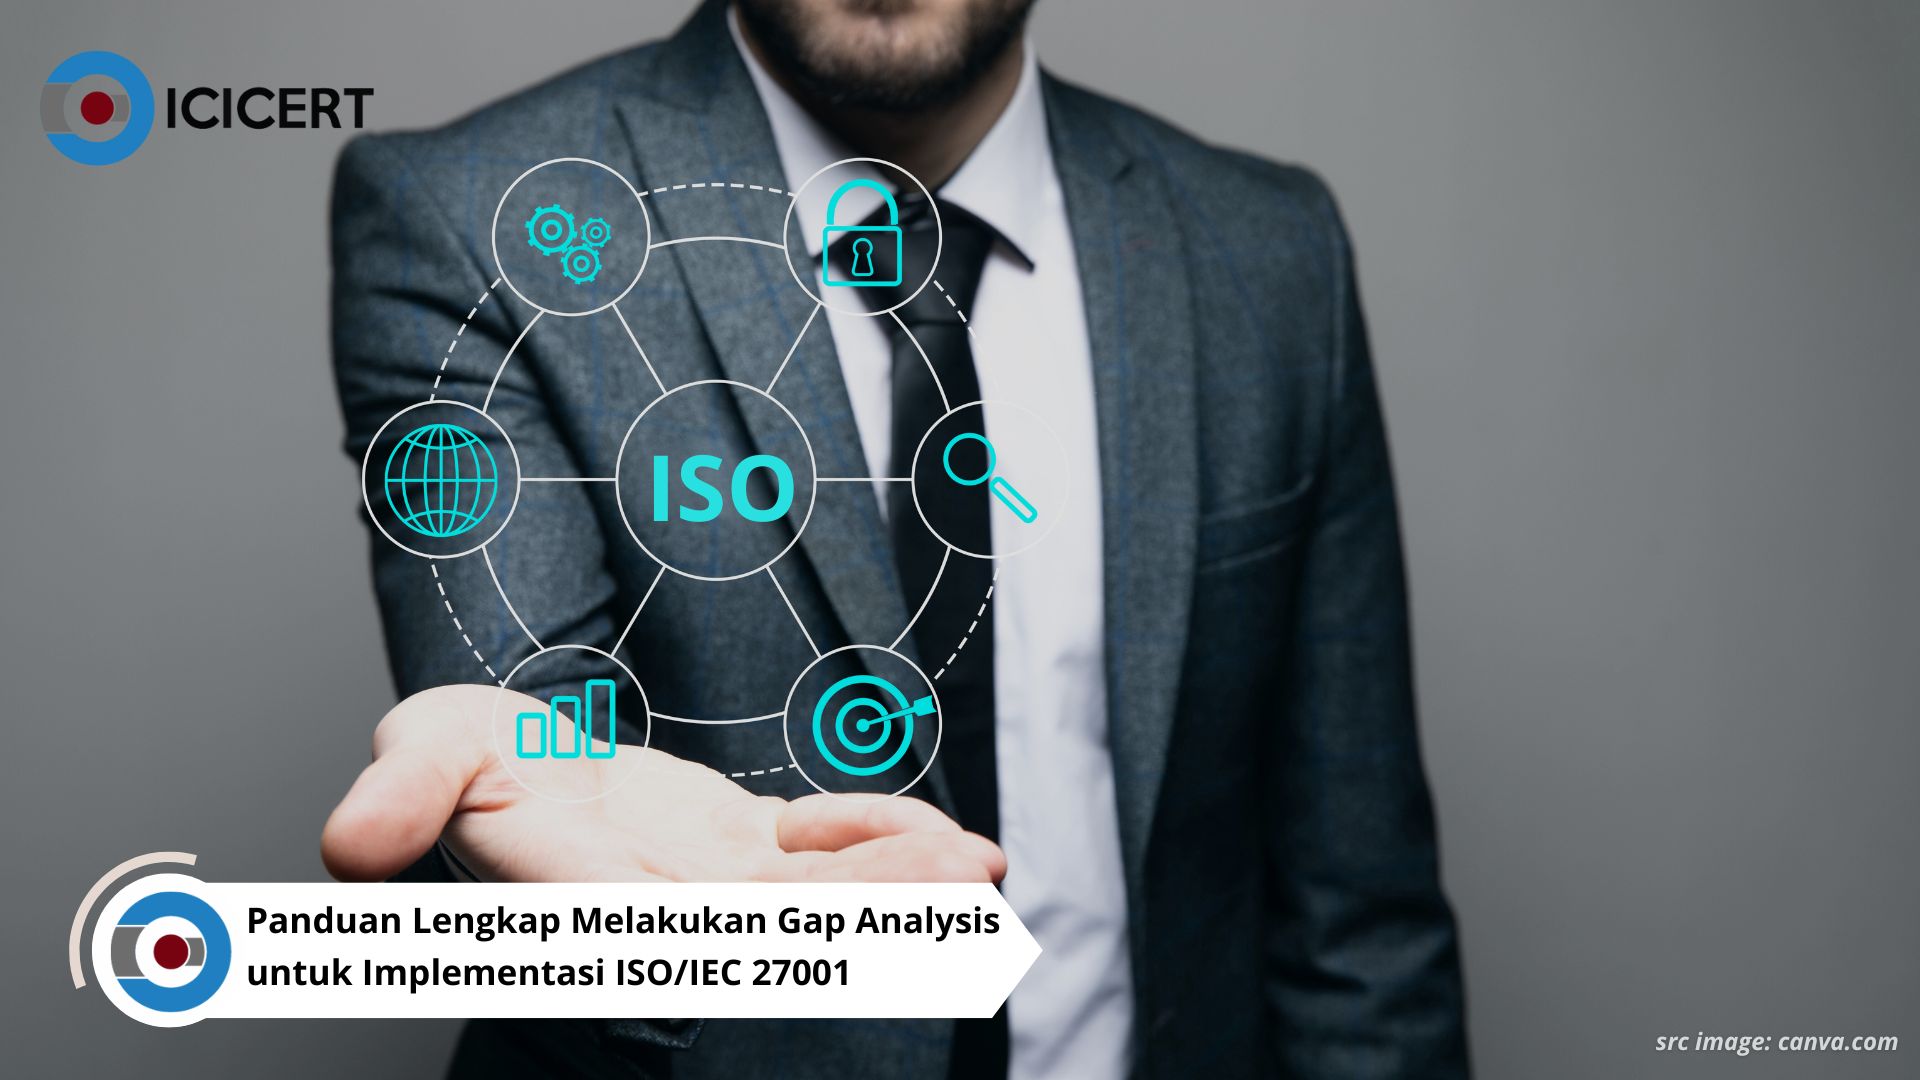 Panduan Lengkap Melakukan Gap Analysis untuk Implementasi ISO/IEC 27001